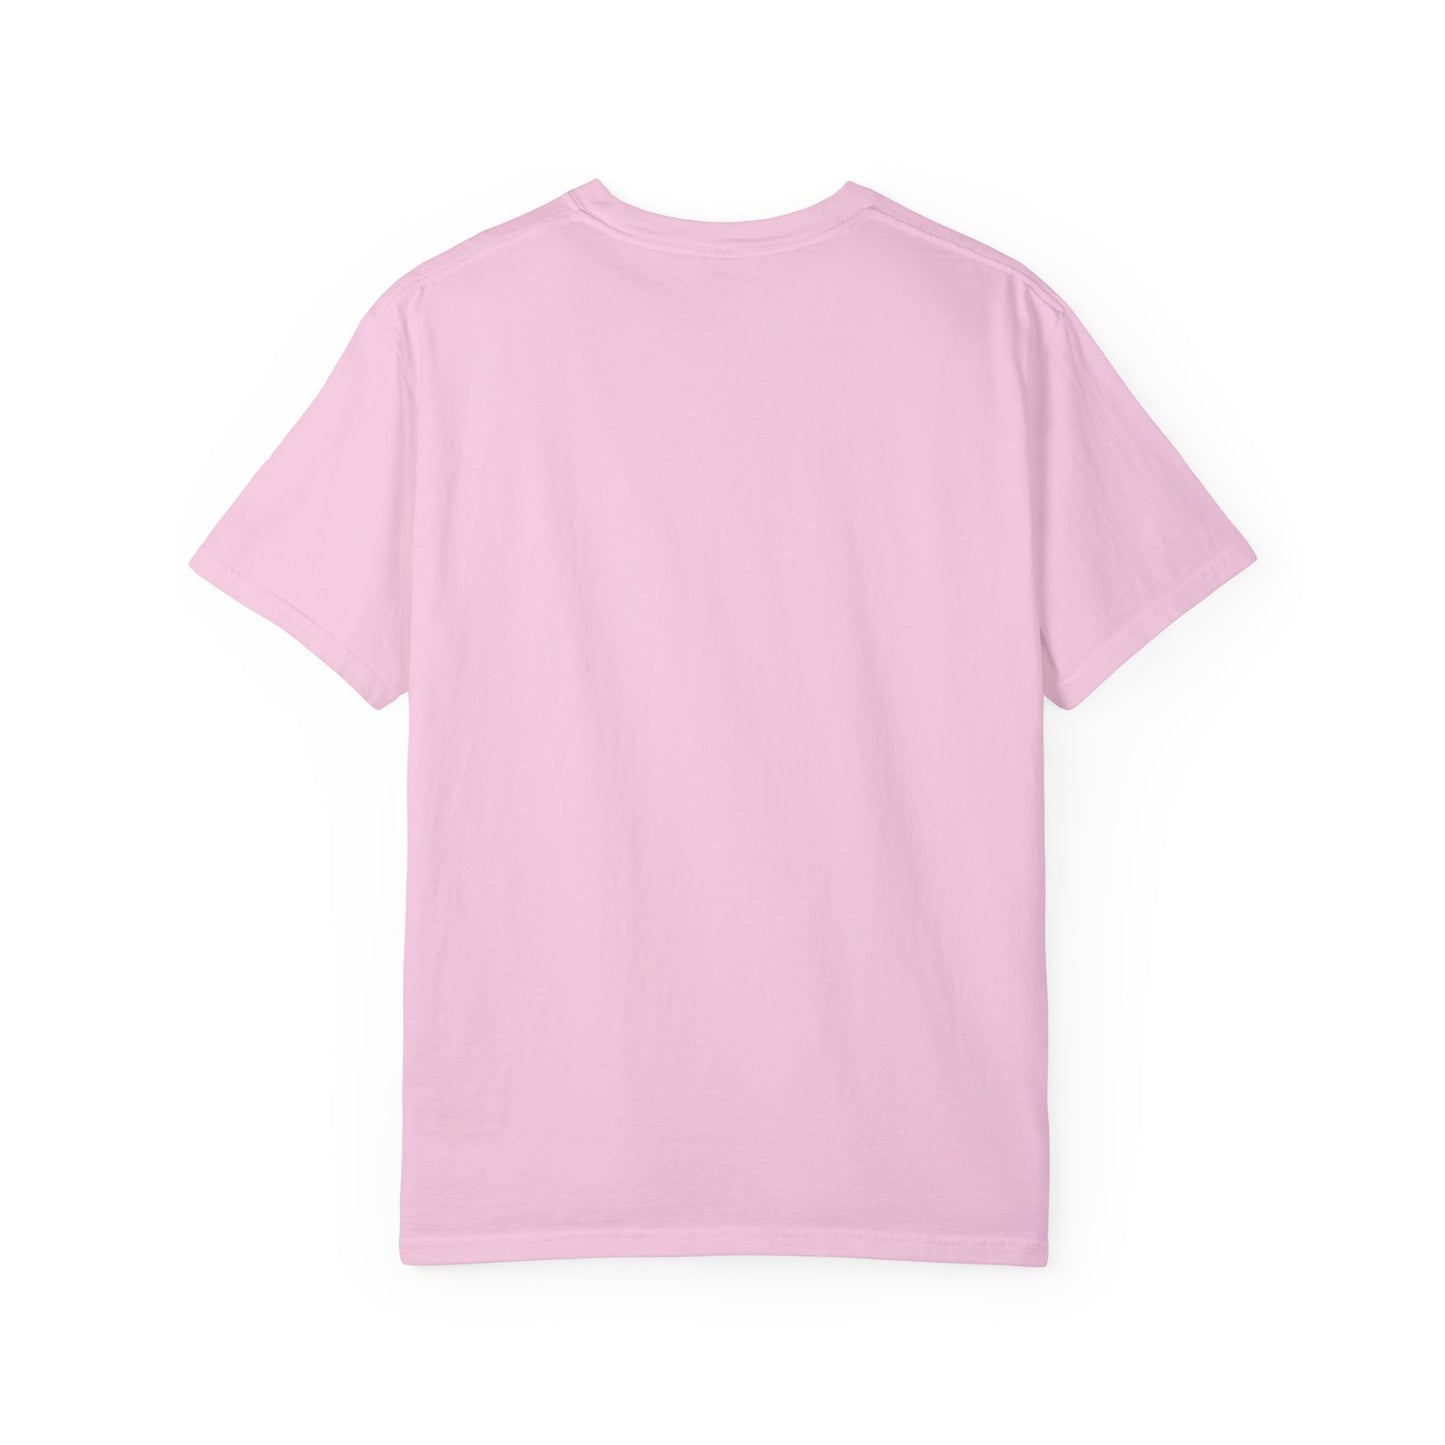 My Job is Teach Shirt, 3D Text Printer Pink Teacher Shirts, Trendy Teacher T Shirt, Retro Back to school, Teacher Appreciation, CC804